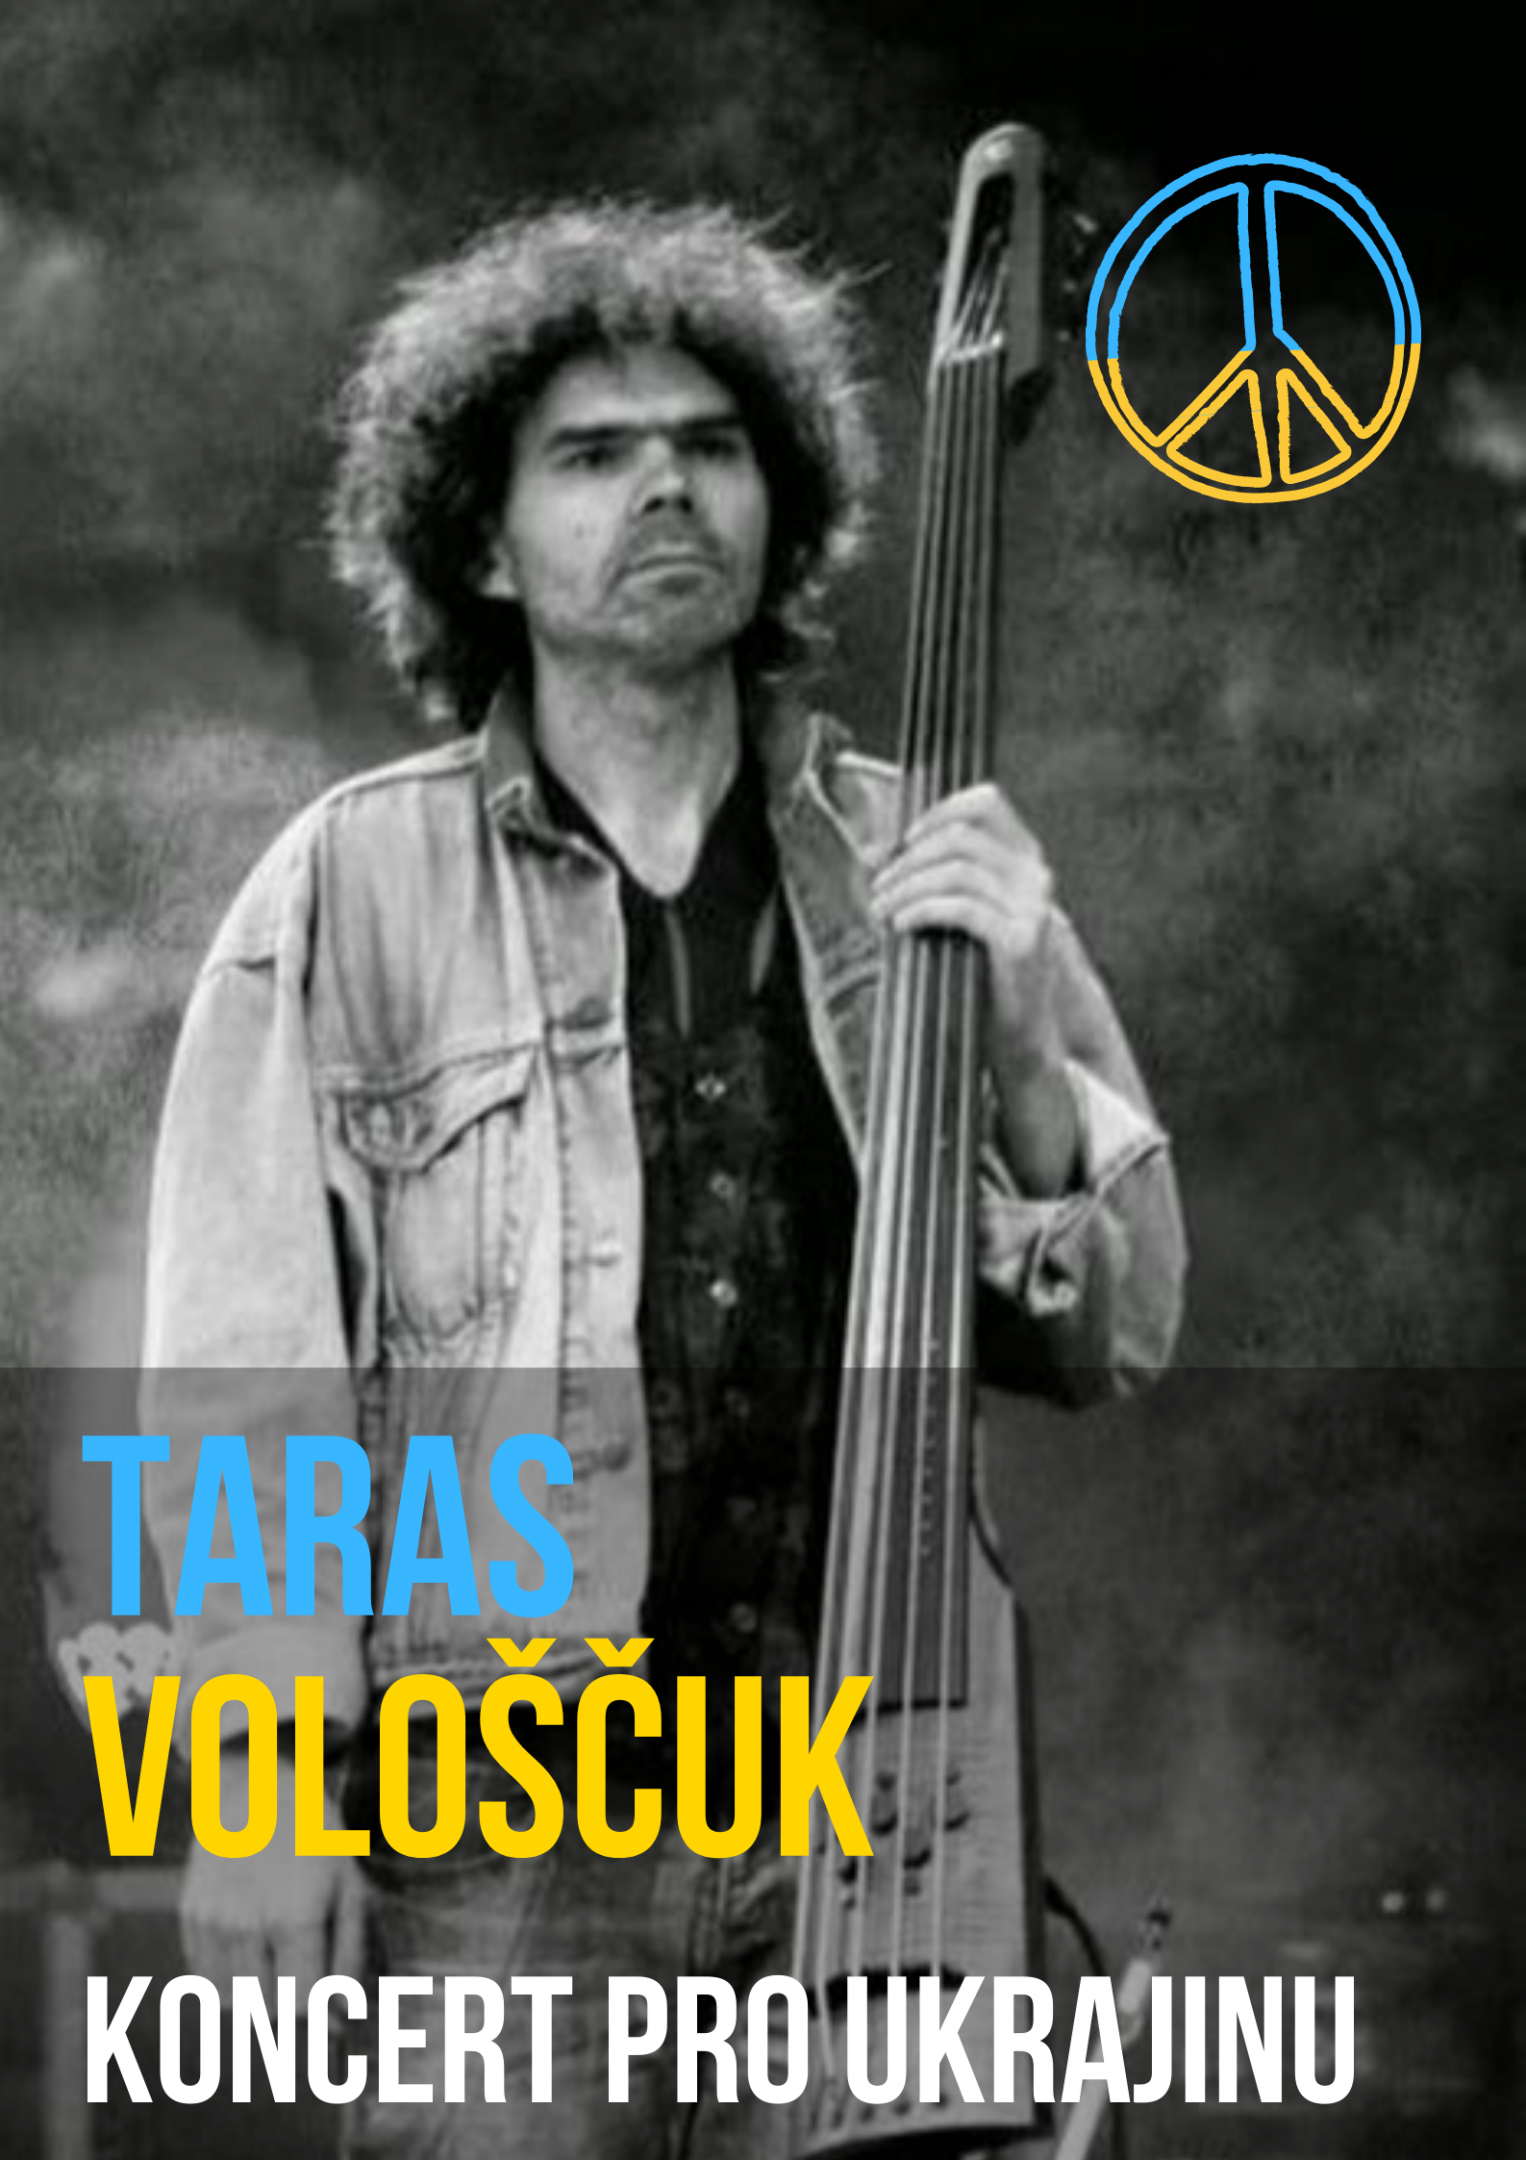 Fotogalerie Taras Vološčuk - koncert pro Ukrajinu - portrét